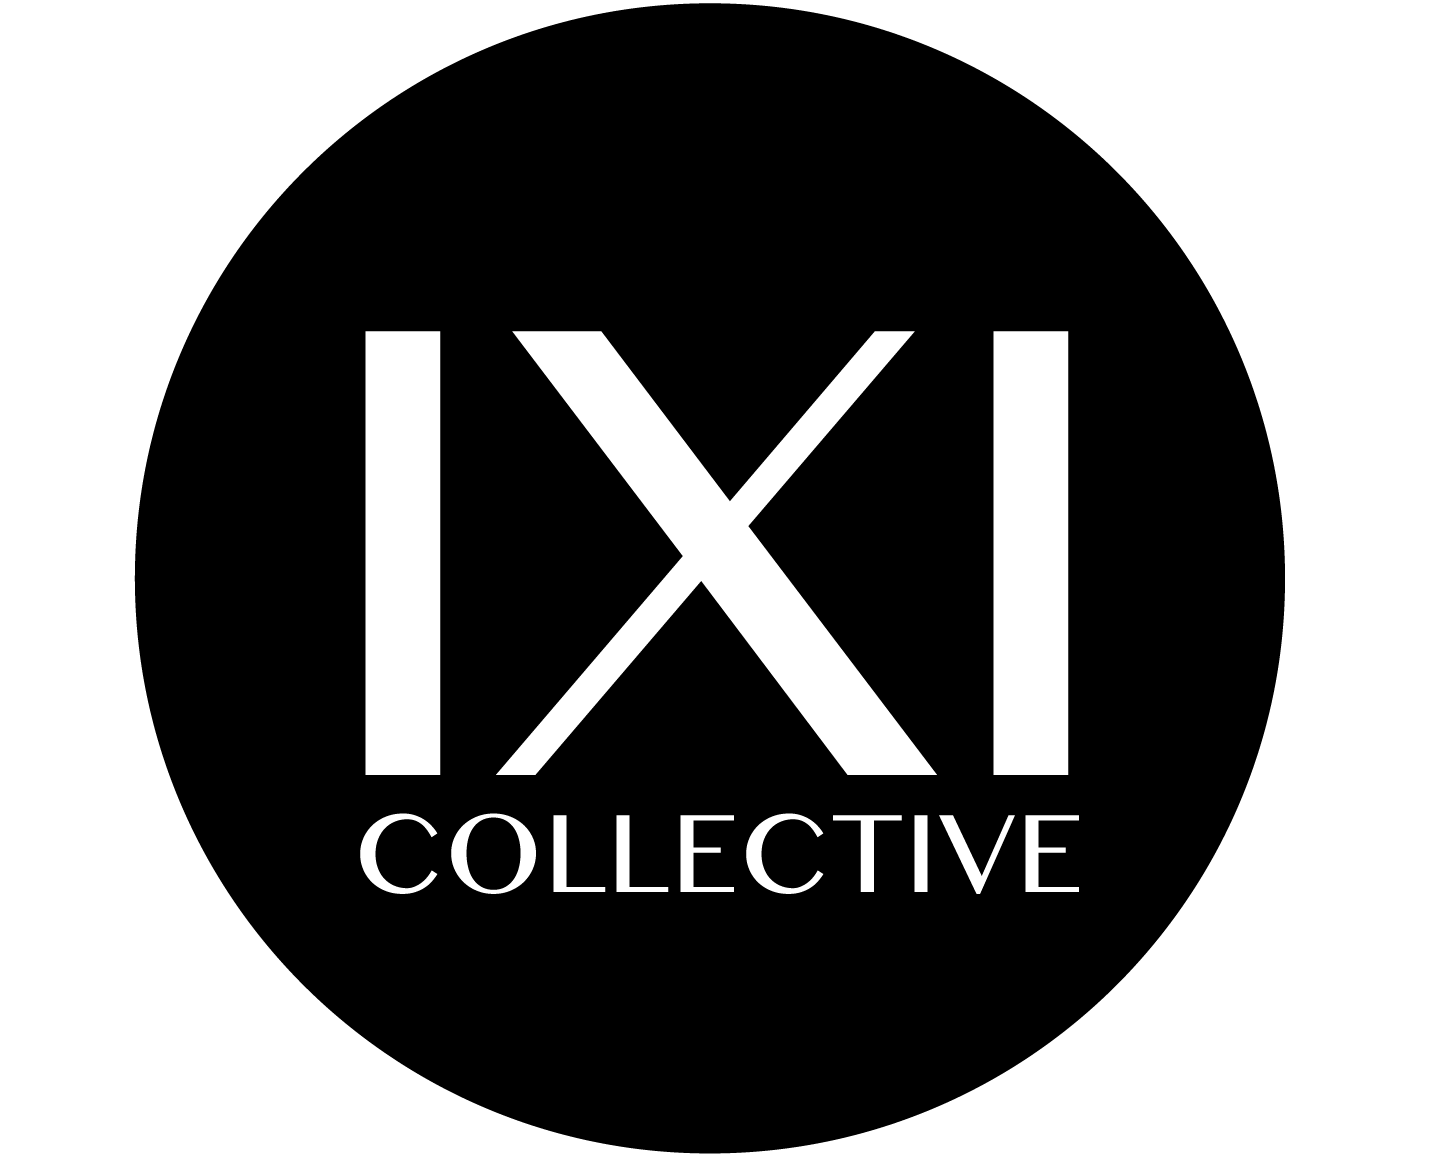 Ixi Logo - IXI COLLECTIVE